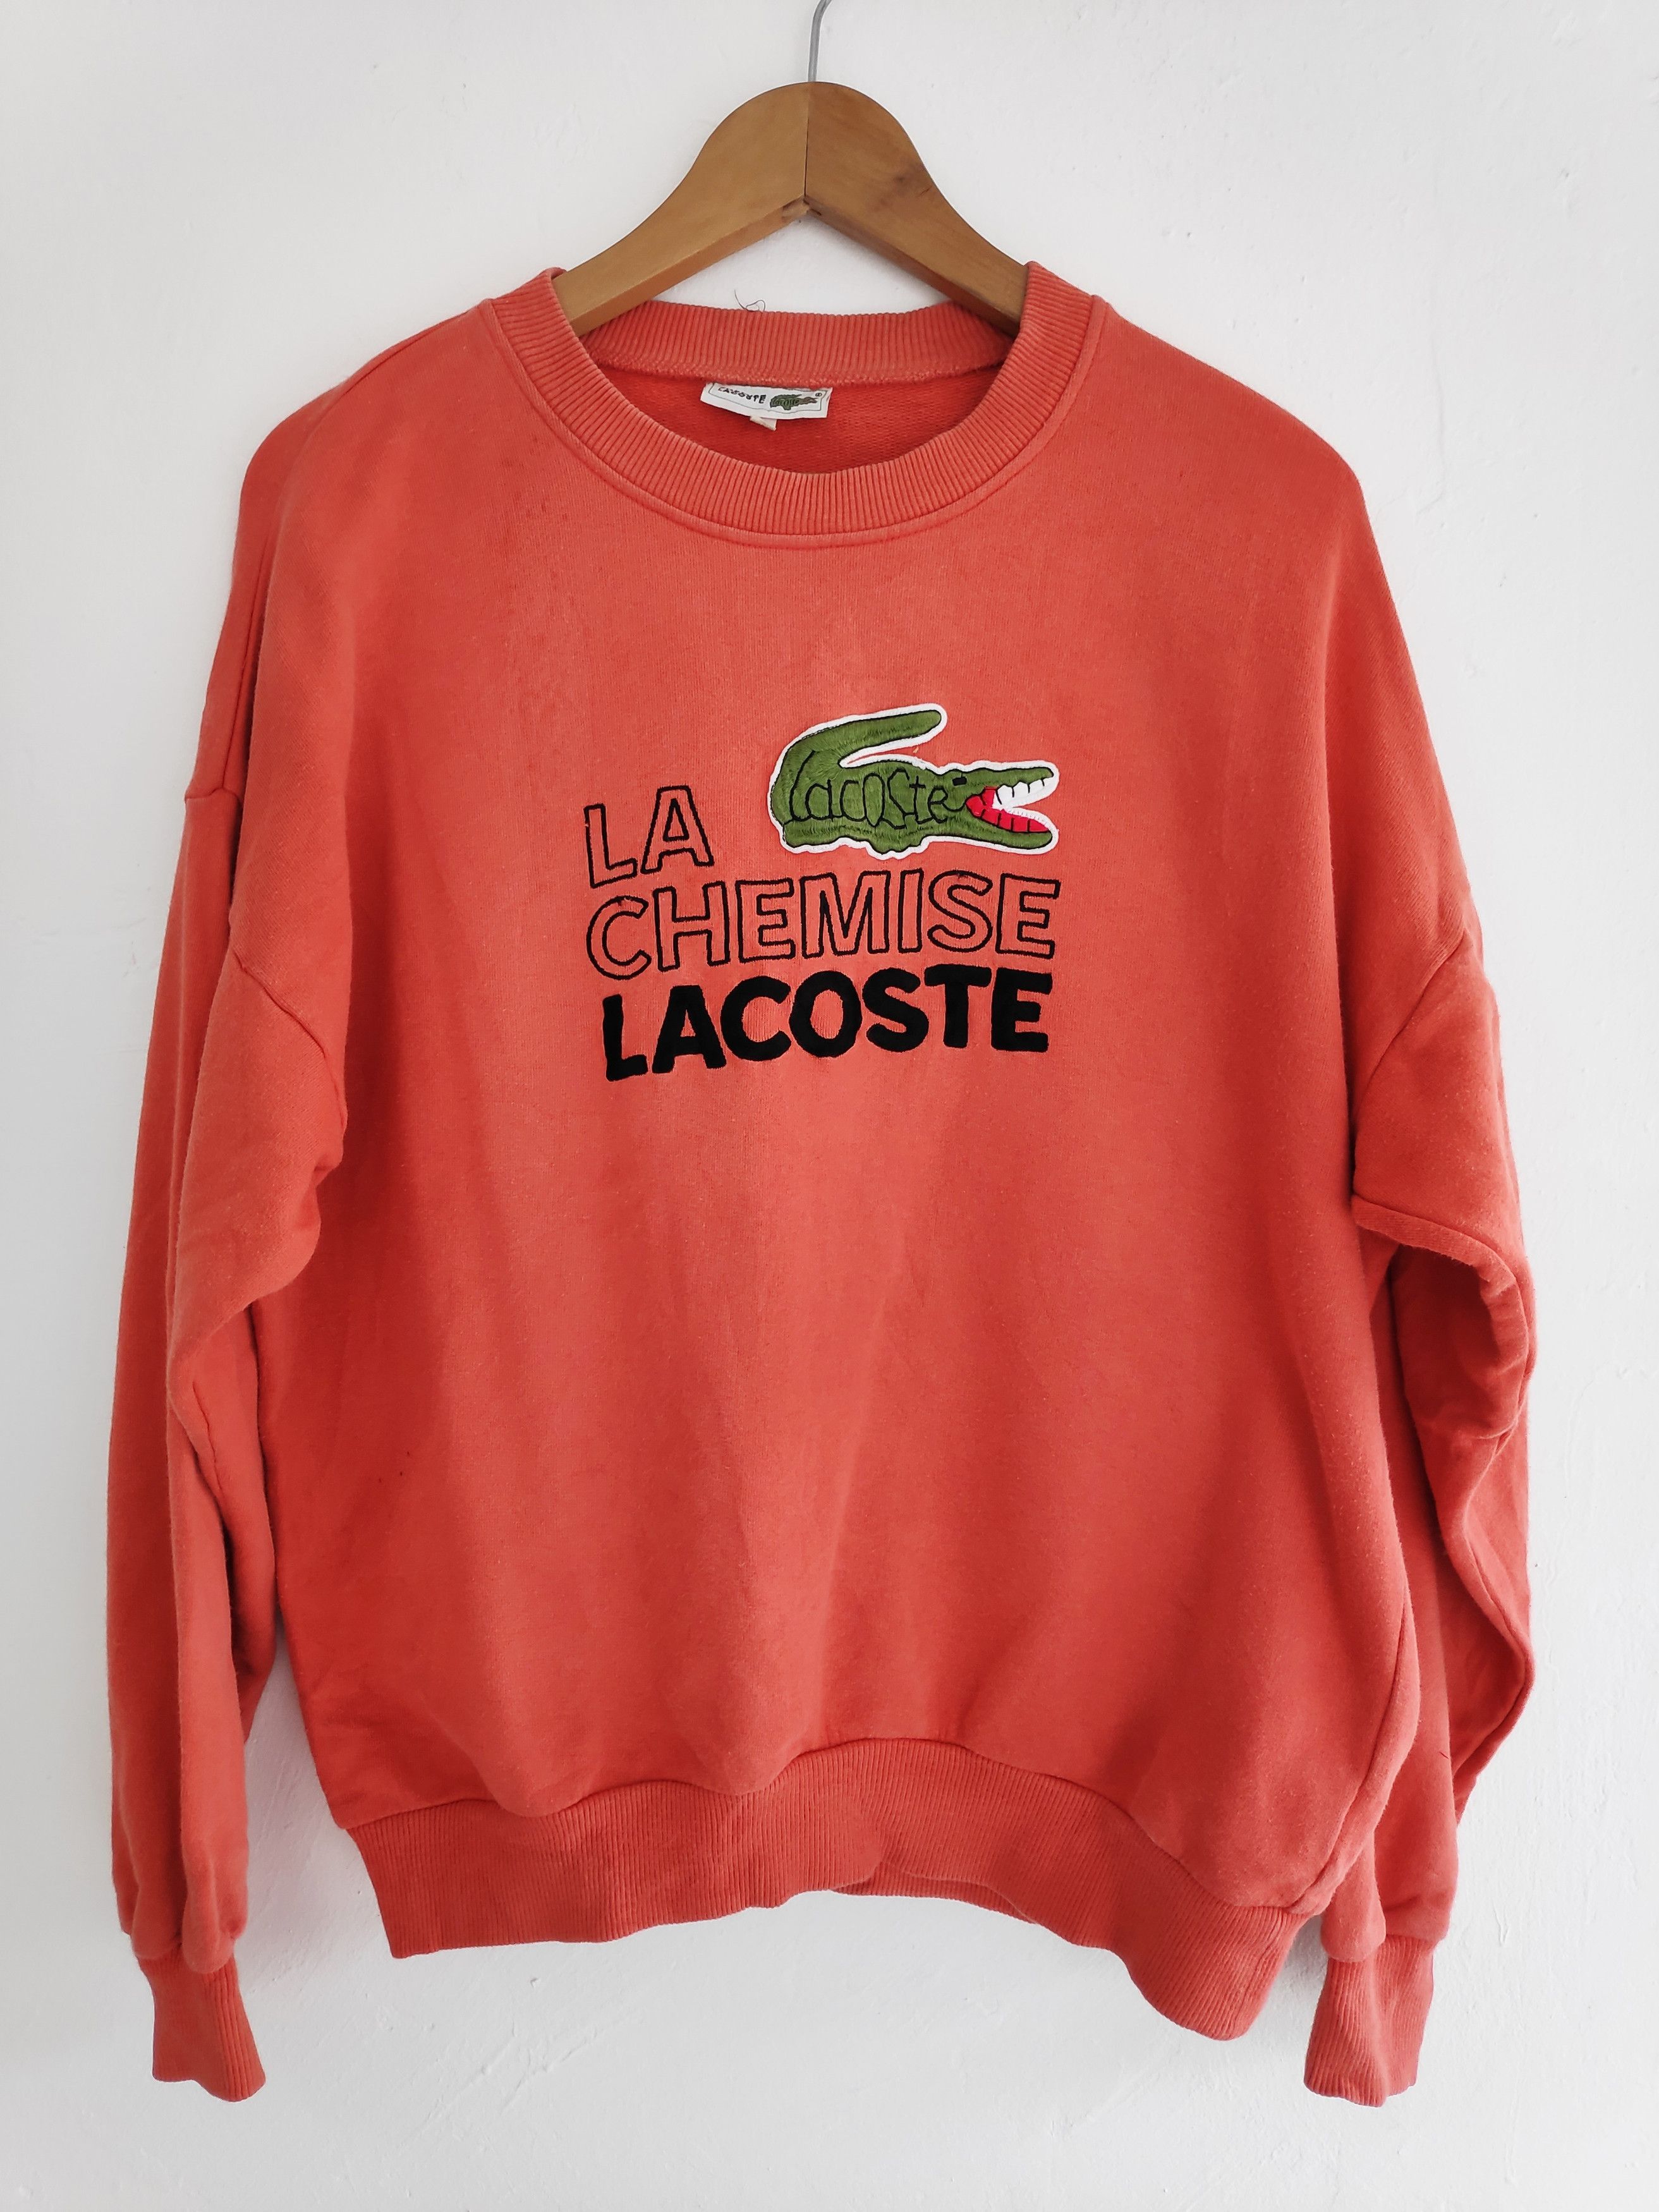 Vintage Vintage LA Chemise Lacoste Paris Sweatshirt Embroidery logo Large size Grailed